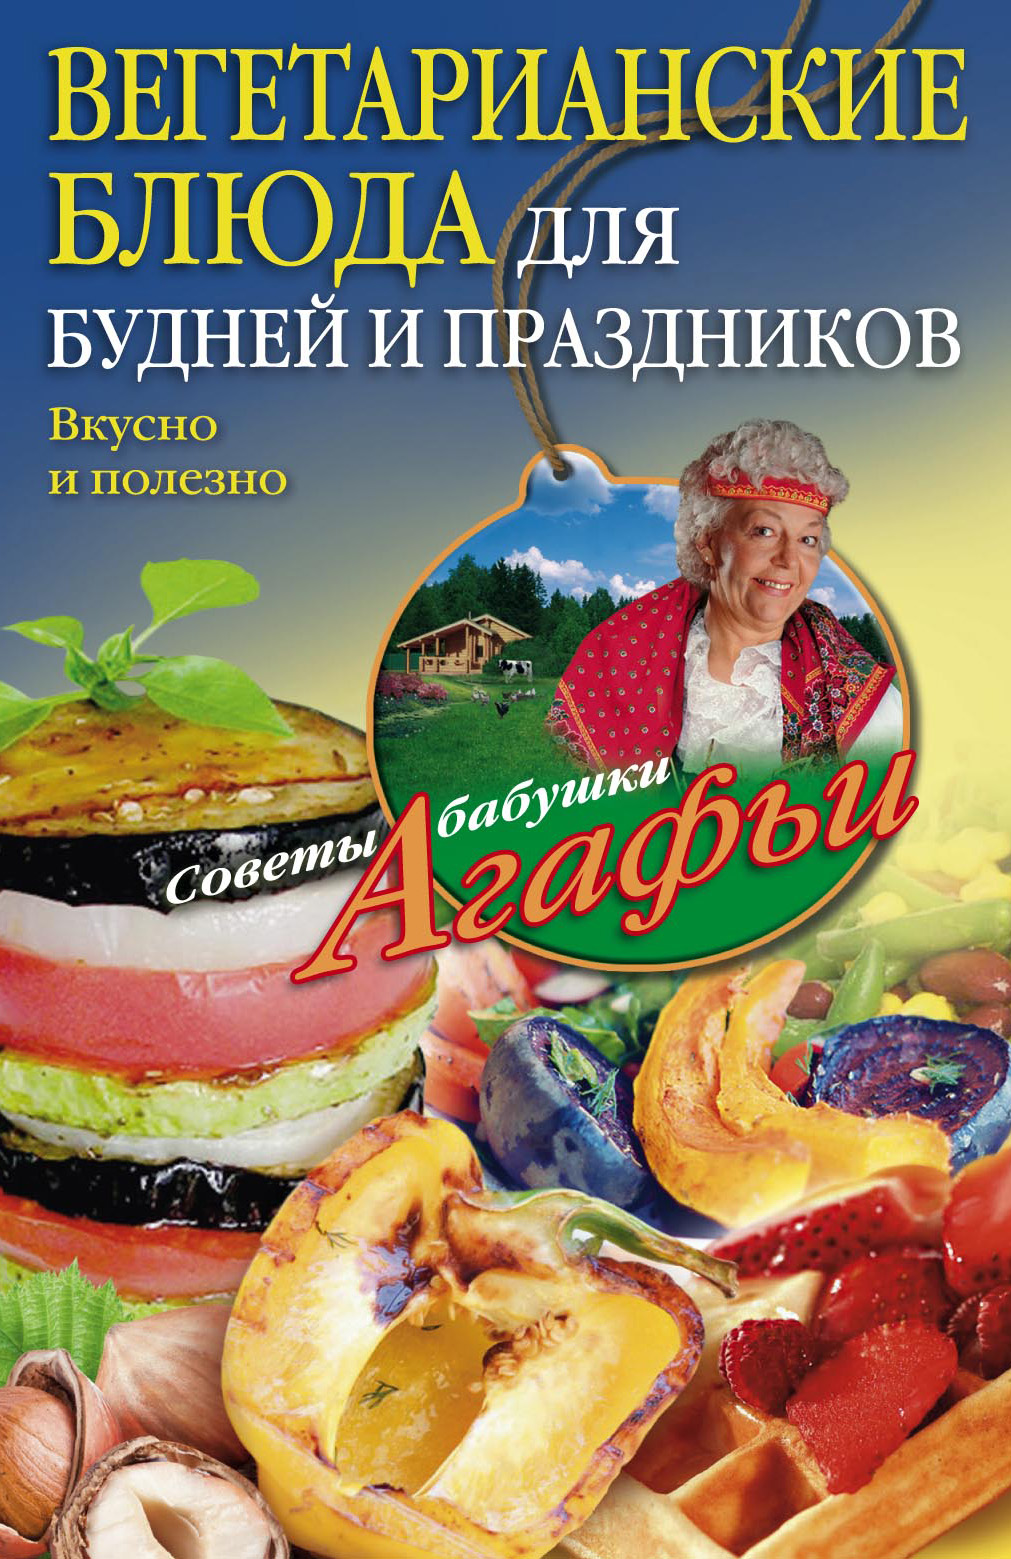 Вегетарианские кафе Санкт-Петербурга